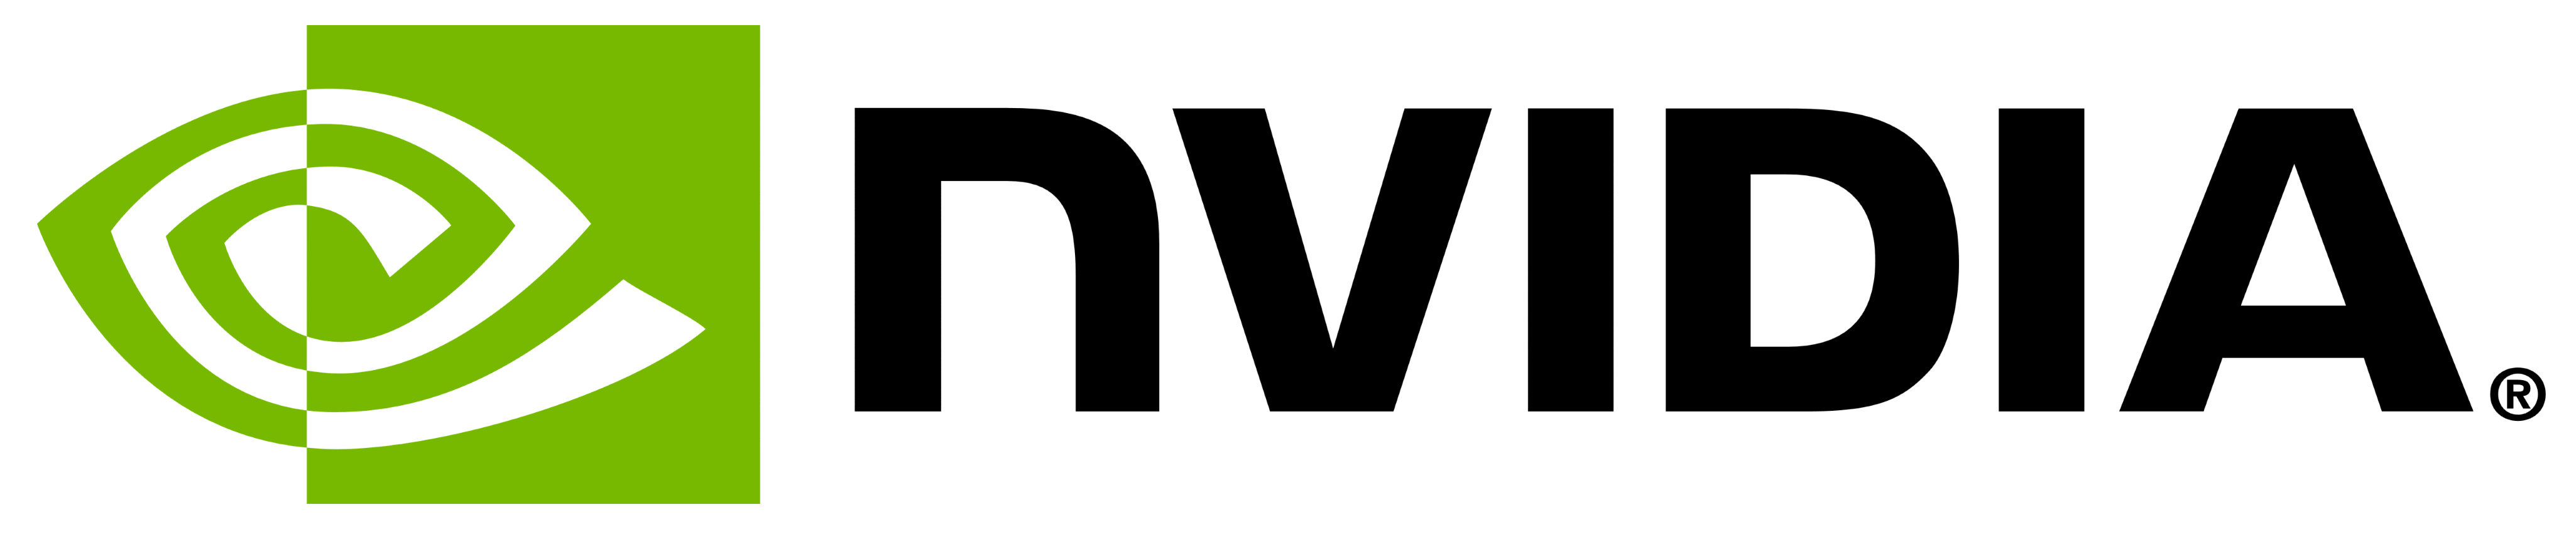 Nvidia logo, logotype